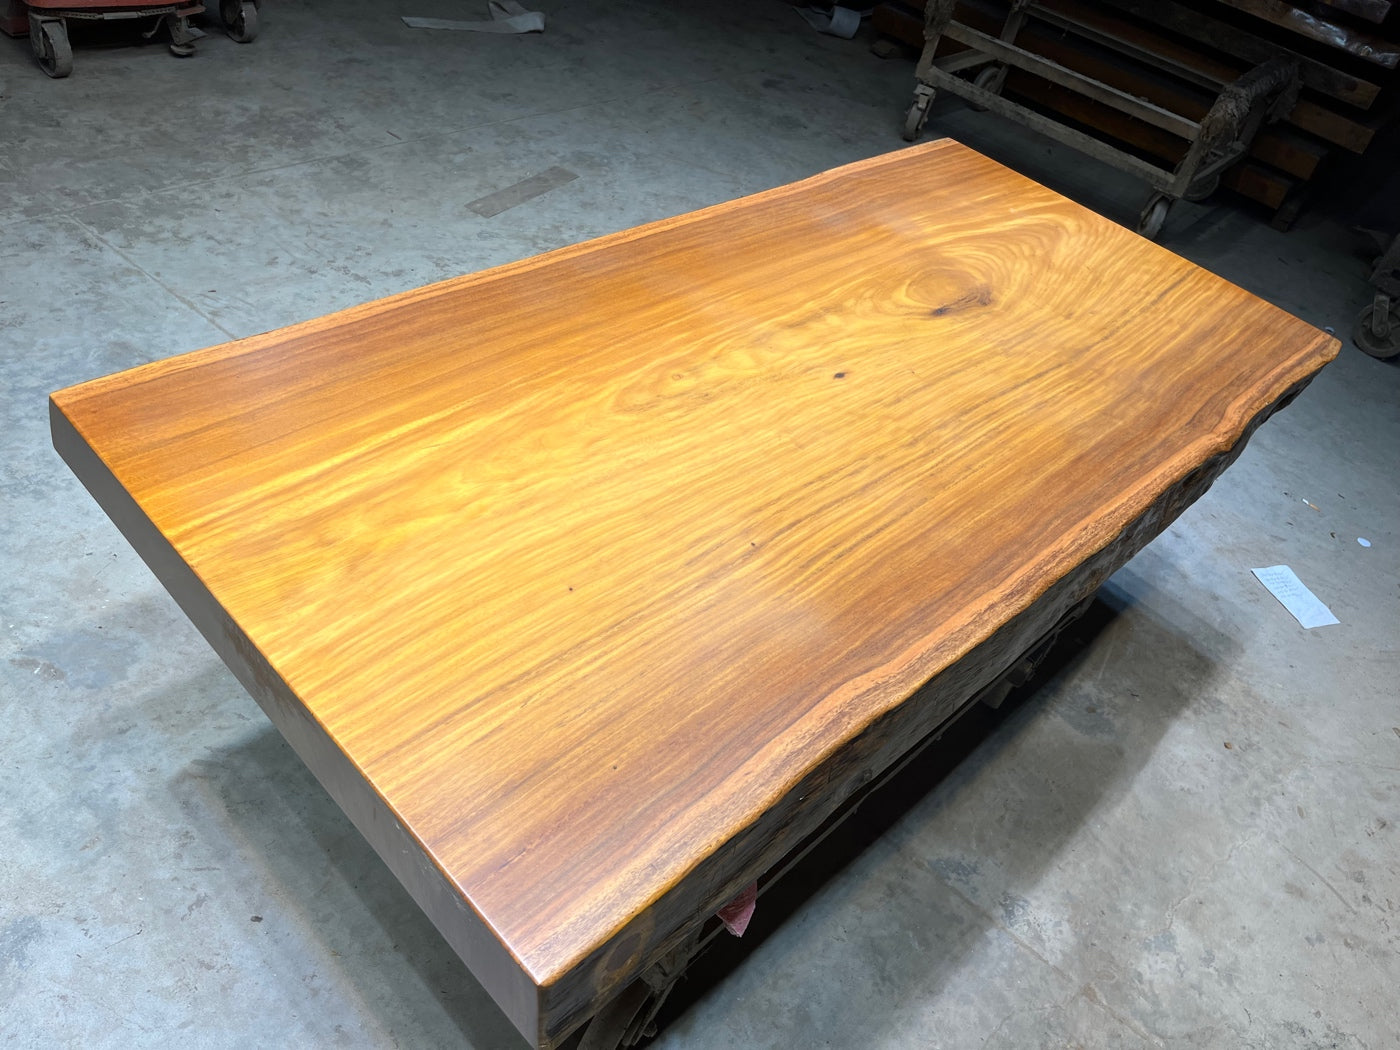 أرجل طاولة لوح خشب تالي، سطح طاولة خشب تالي، تصميمات طاولة لوح خشب أفريقي